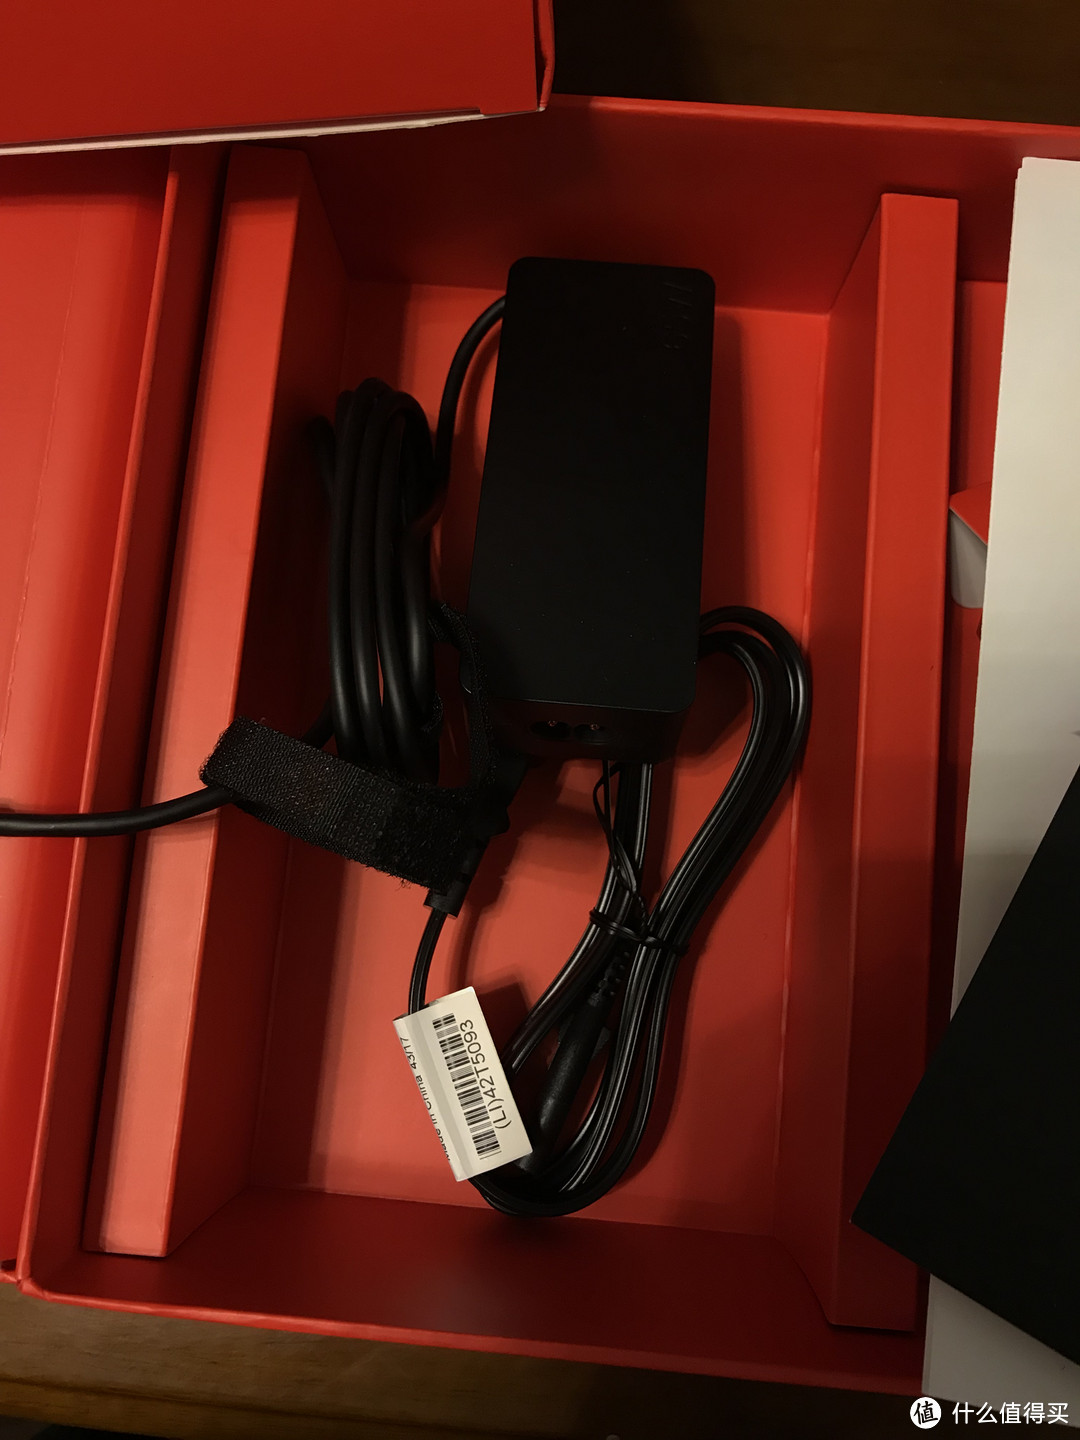 海淘新人的ThinkPad x1 carbon 2017黑五八通道电汇转运四方55折入手记